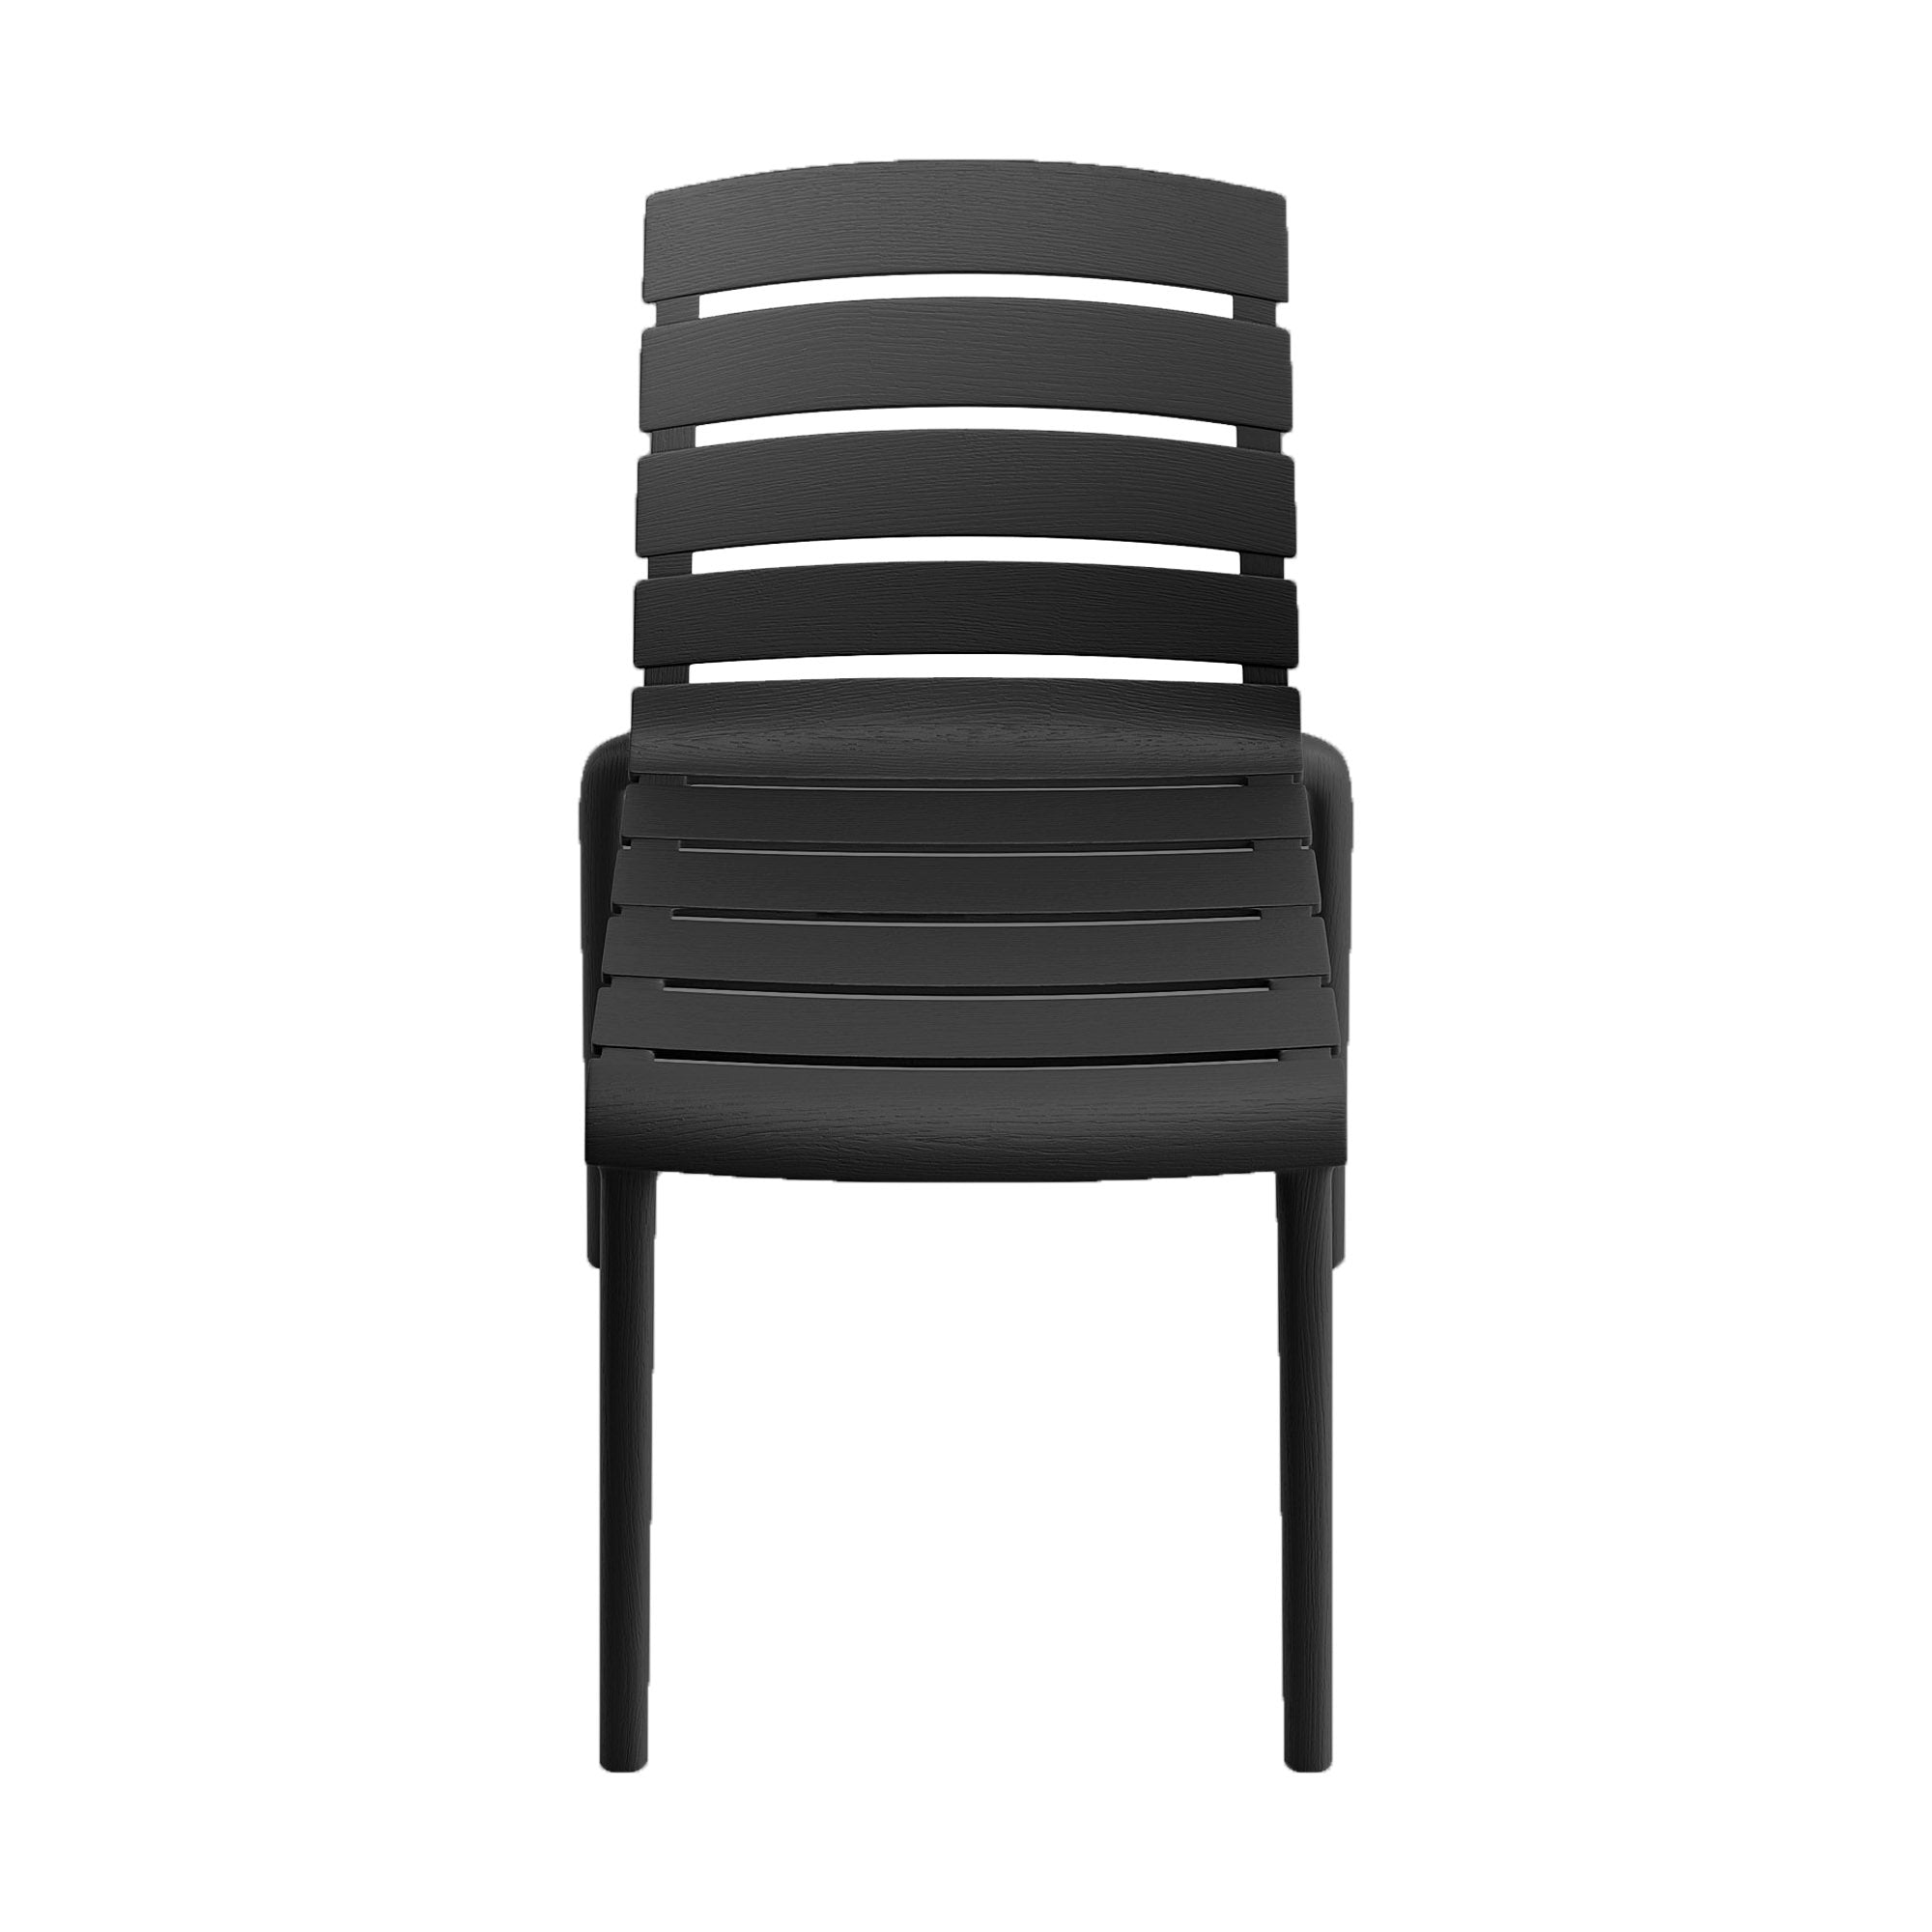 Rylan Indoor and Outdoor Stackable Chair - Black - Set of 2